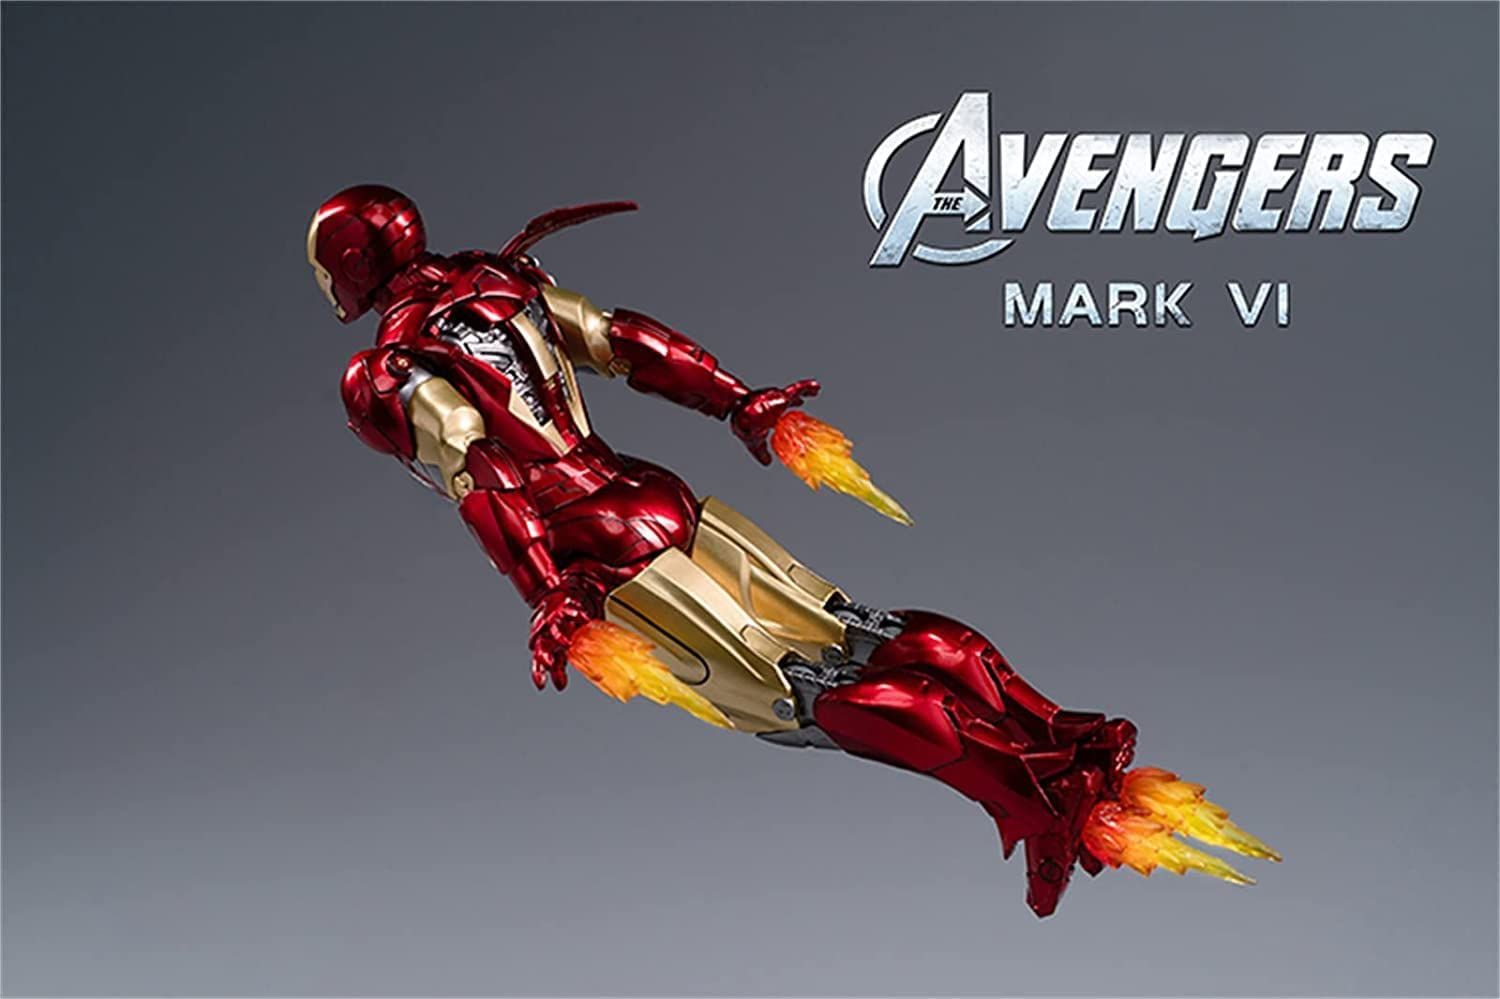  Mô hình nhân vật Marvel Iron man người sắt MK6 Mark VI SHF tỉ lệ 1:10 18CM ZD Toys FG262 